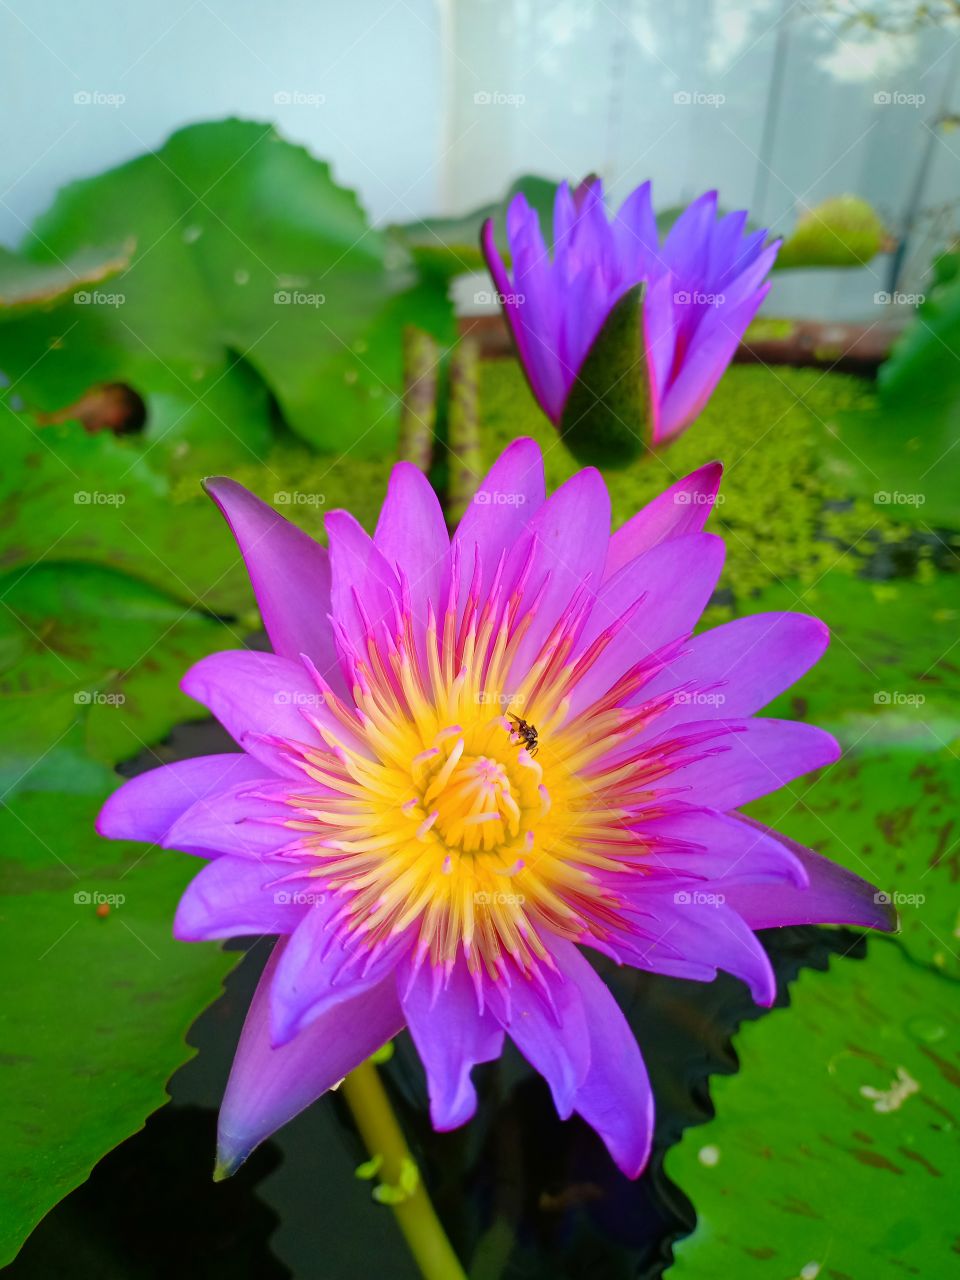 lotus violet